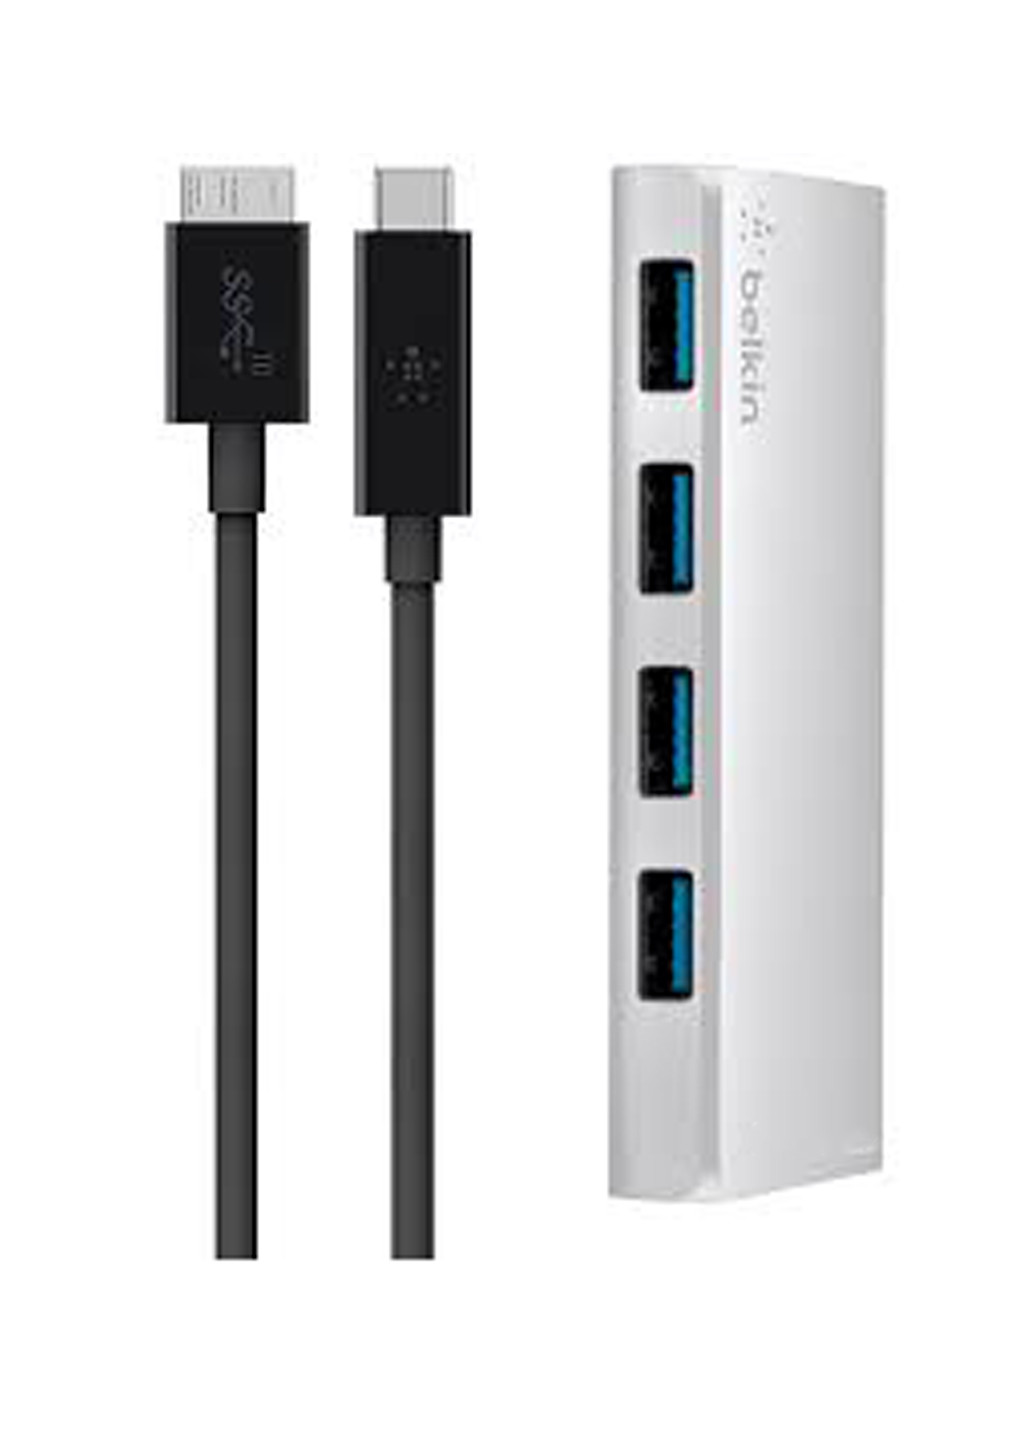 Концентратор USB 3.0, Ultra-Slim Metal, 4 порту + USB-C кабель, активний з БП, Silver (F4U088vf) Belkin usb 3.0, ultra-slim metal, 4 порта + usb-c кабель, активный з бп, silver (f4u088vf) (136463914)